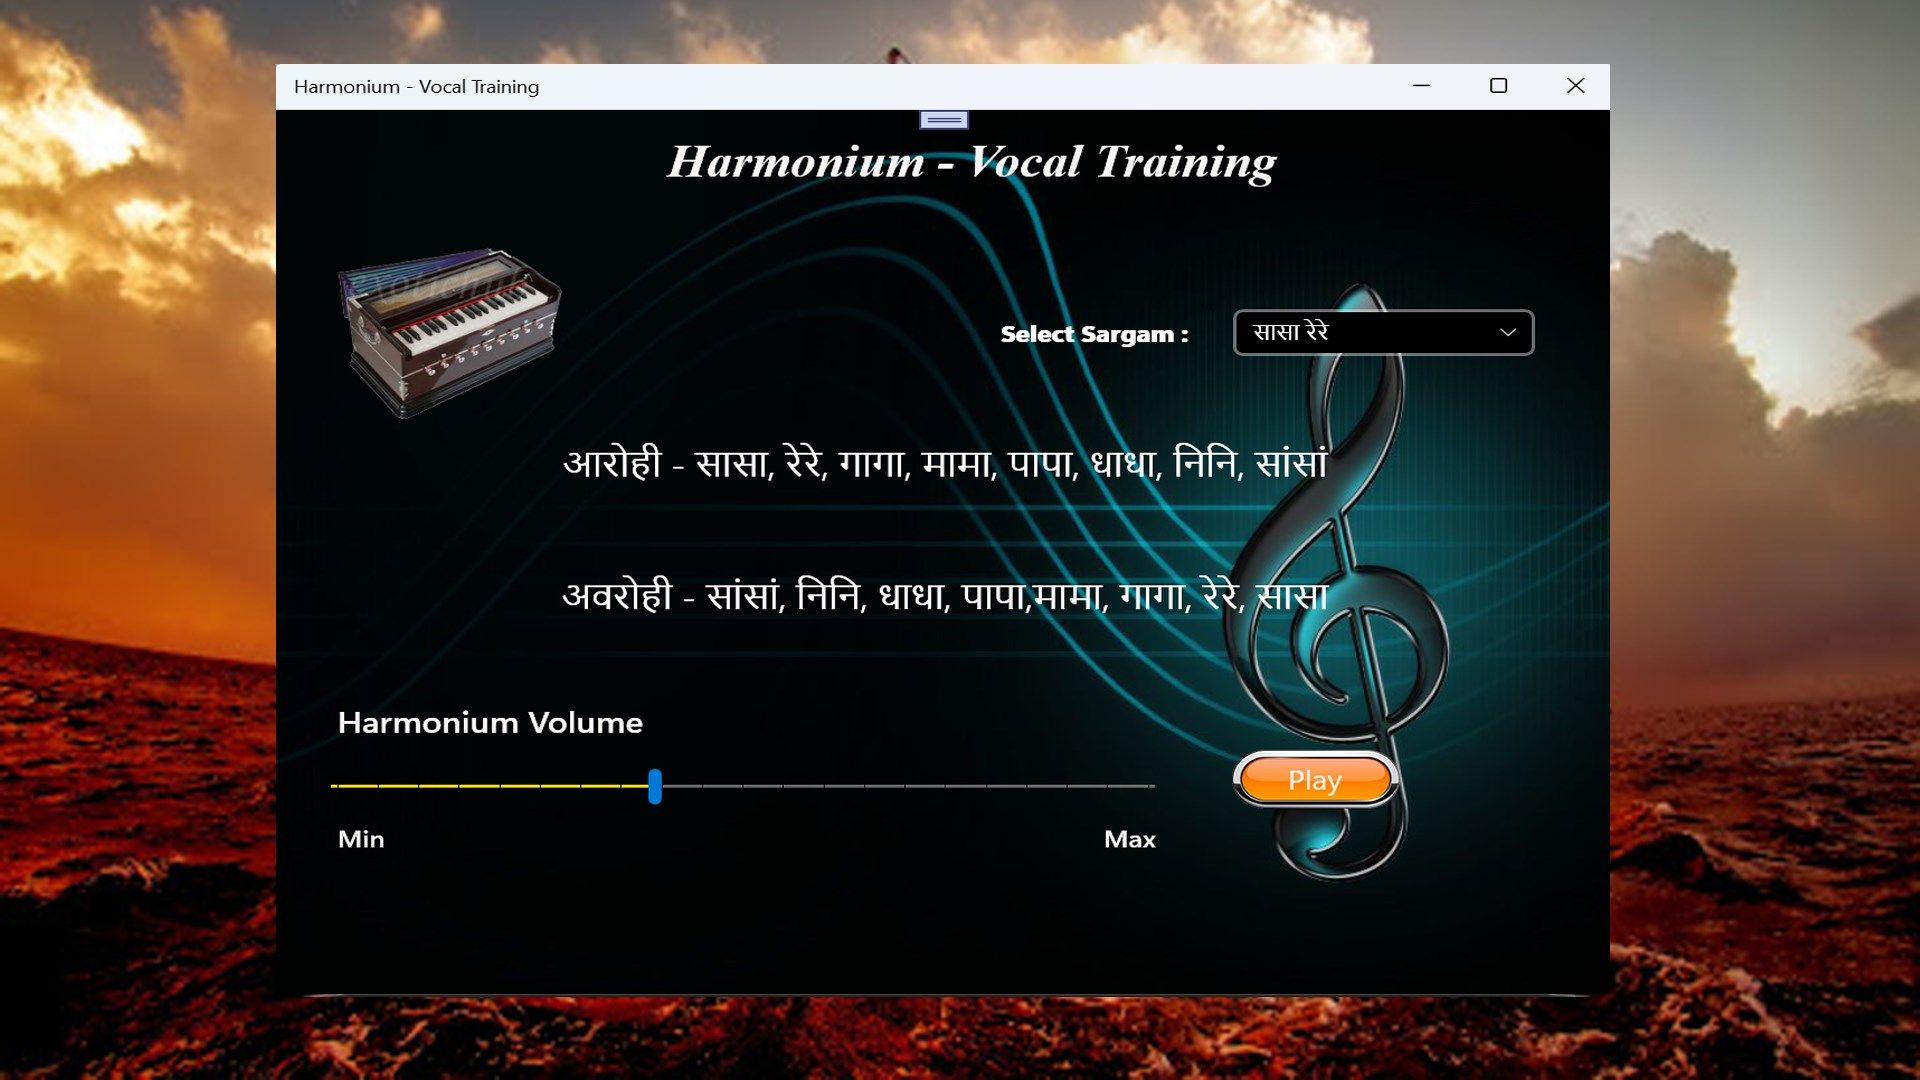 Harmonium - Vocal Training